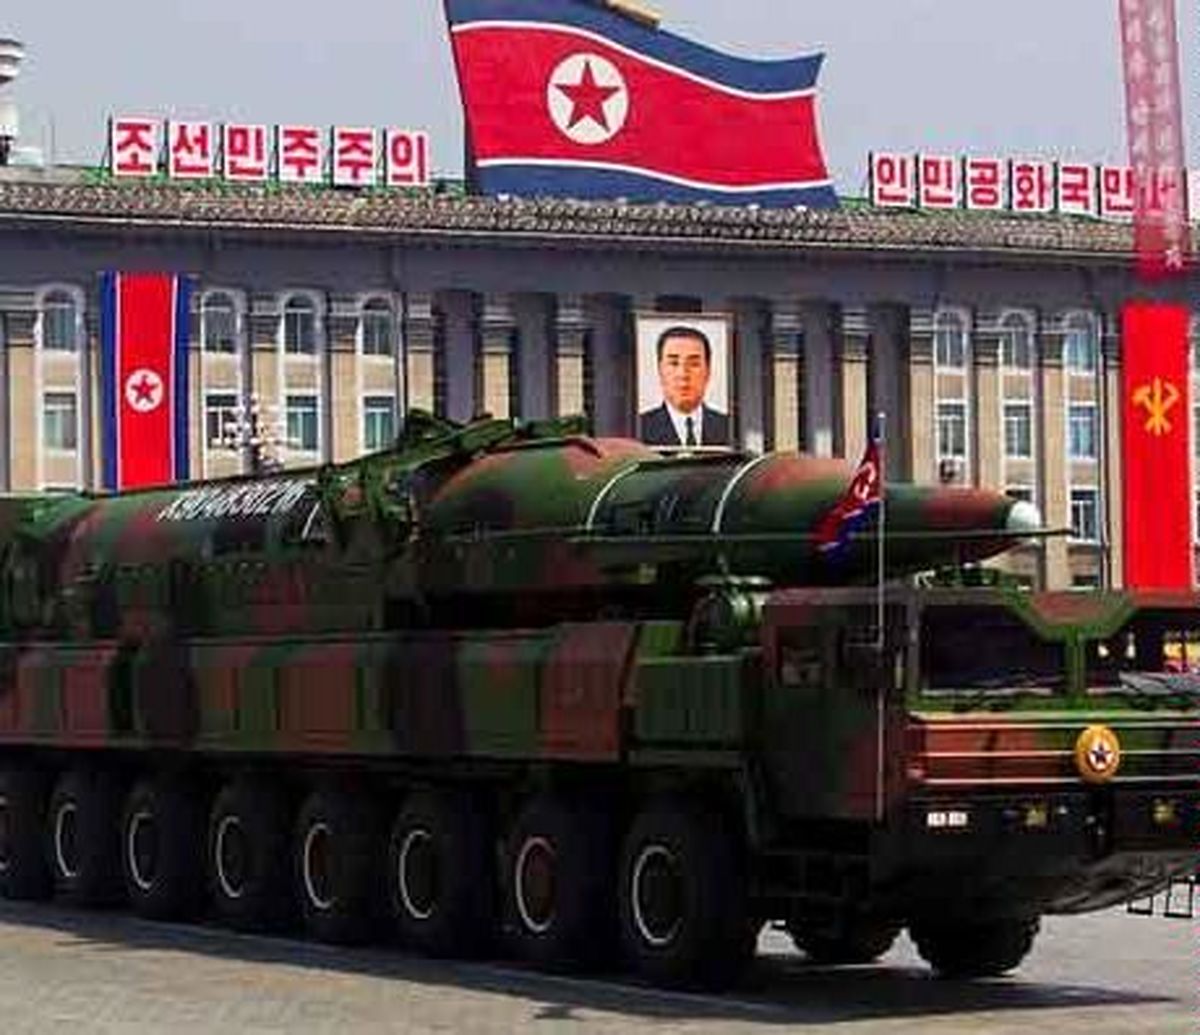 کره شمالی، آمریکا را به حمله اتمی تهدید کرد